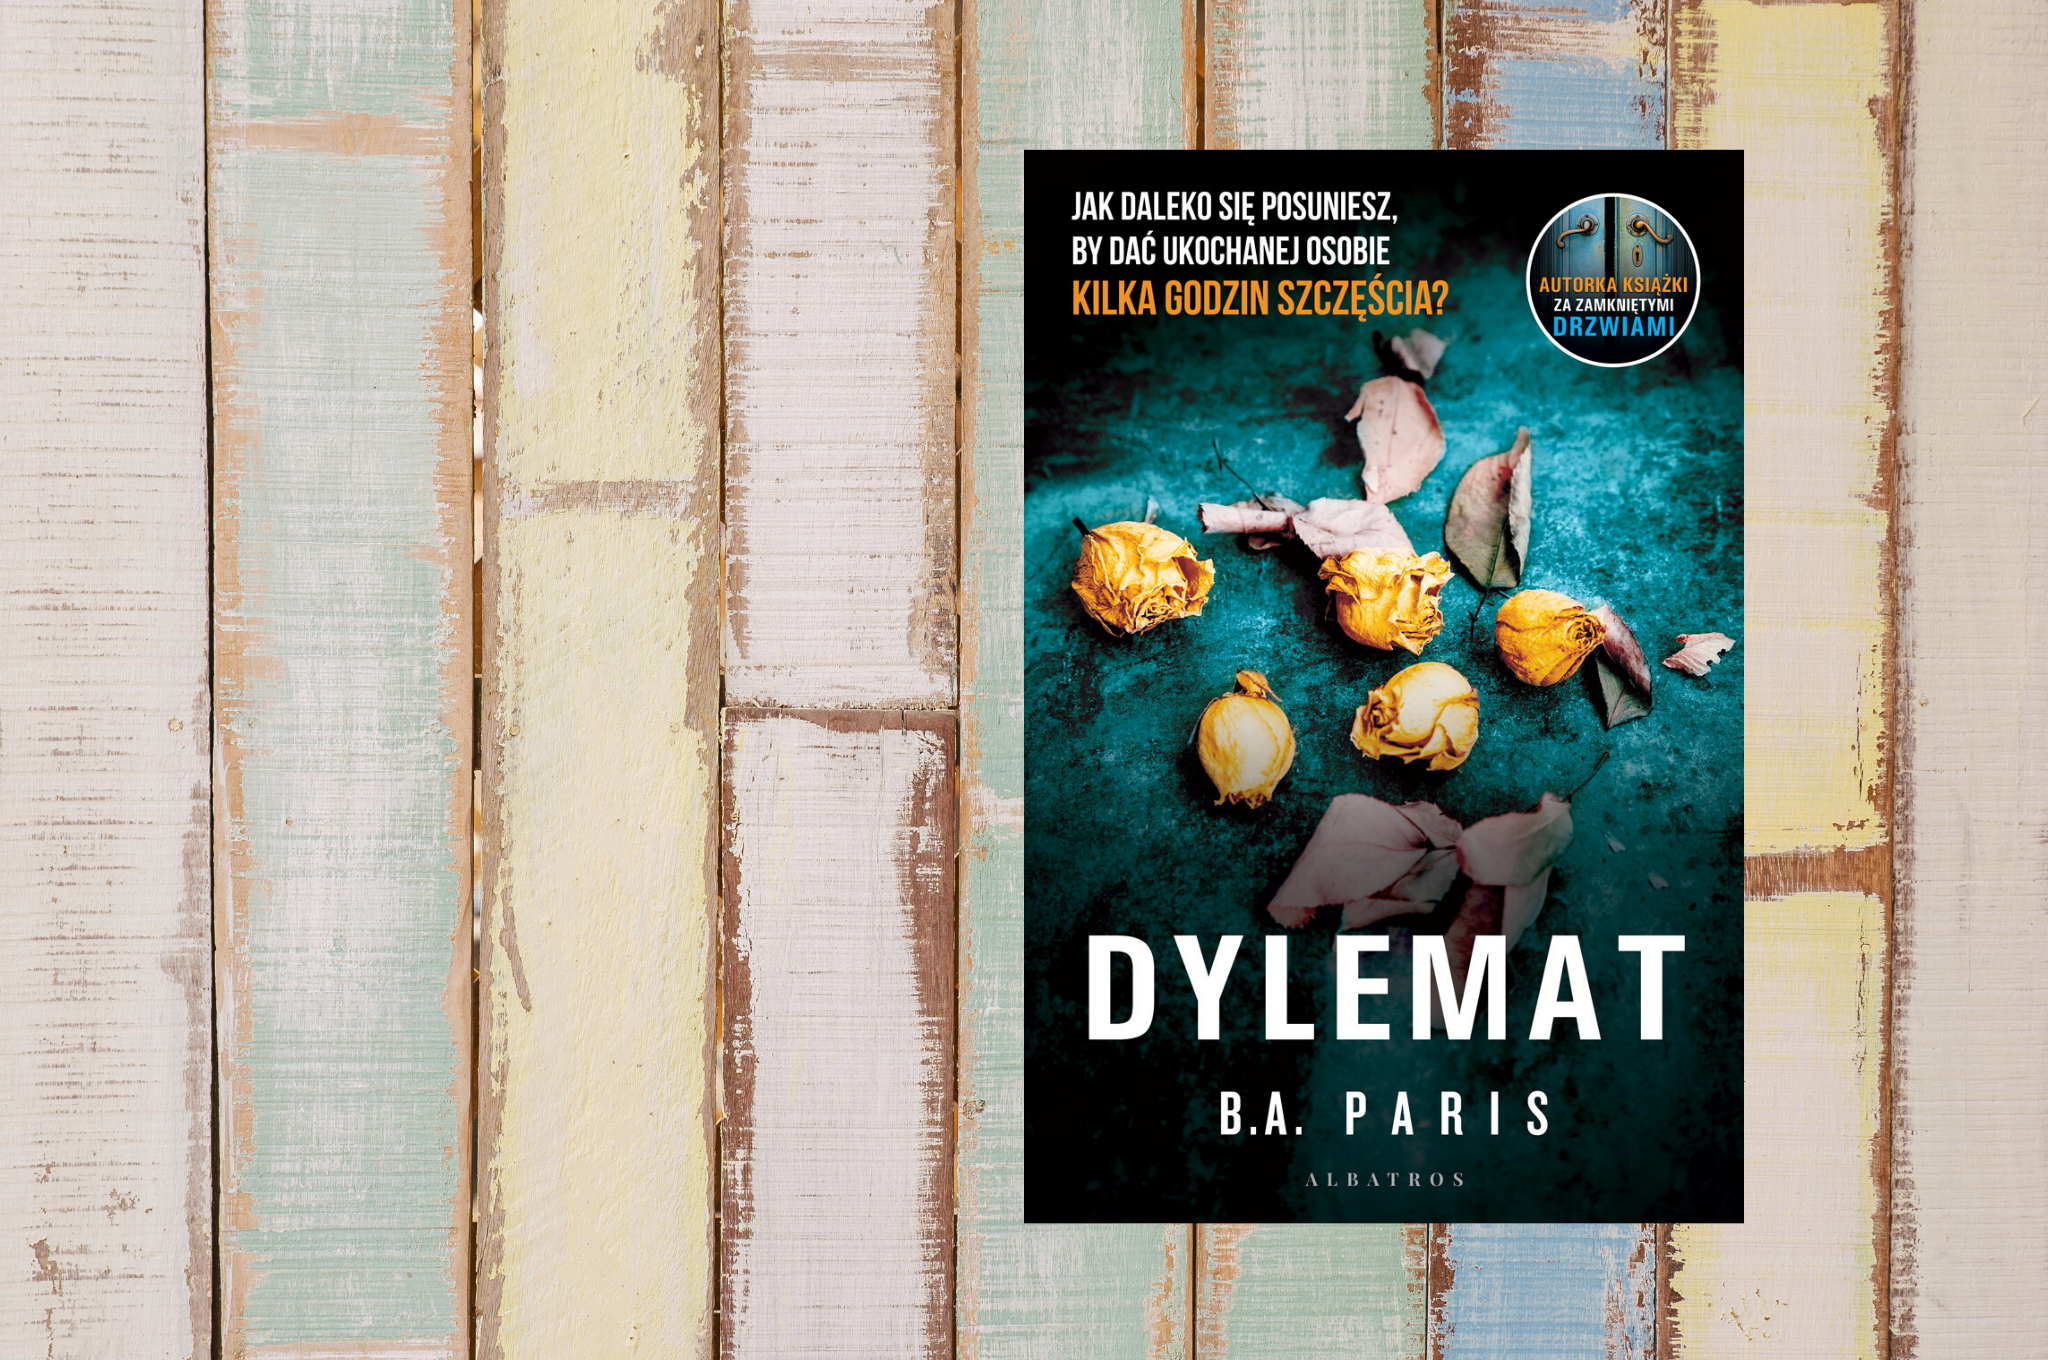 B.A. PARIS "DYLEMAT"